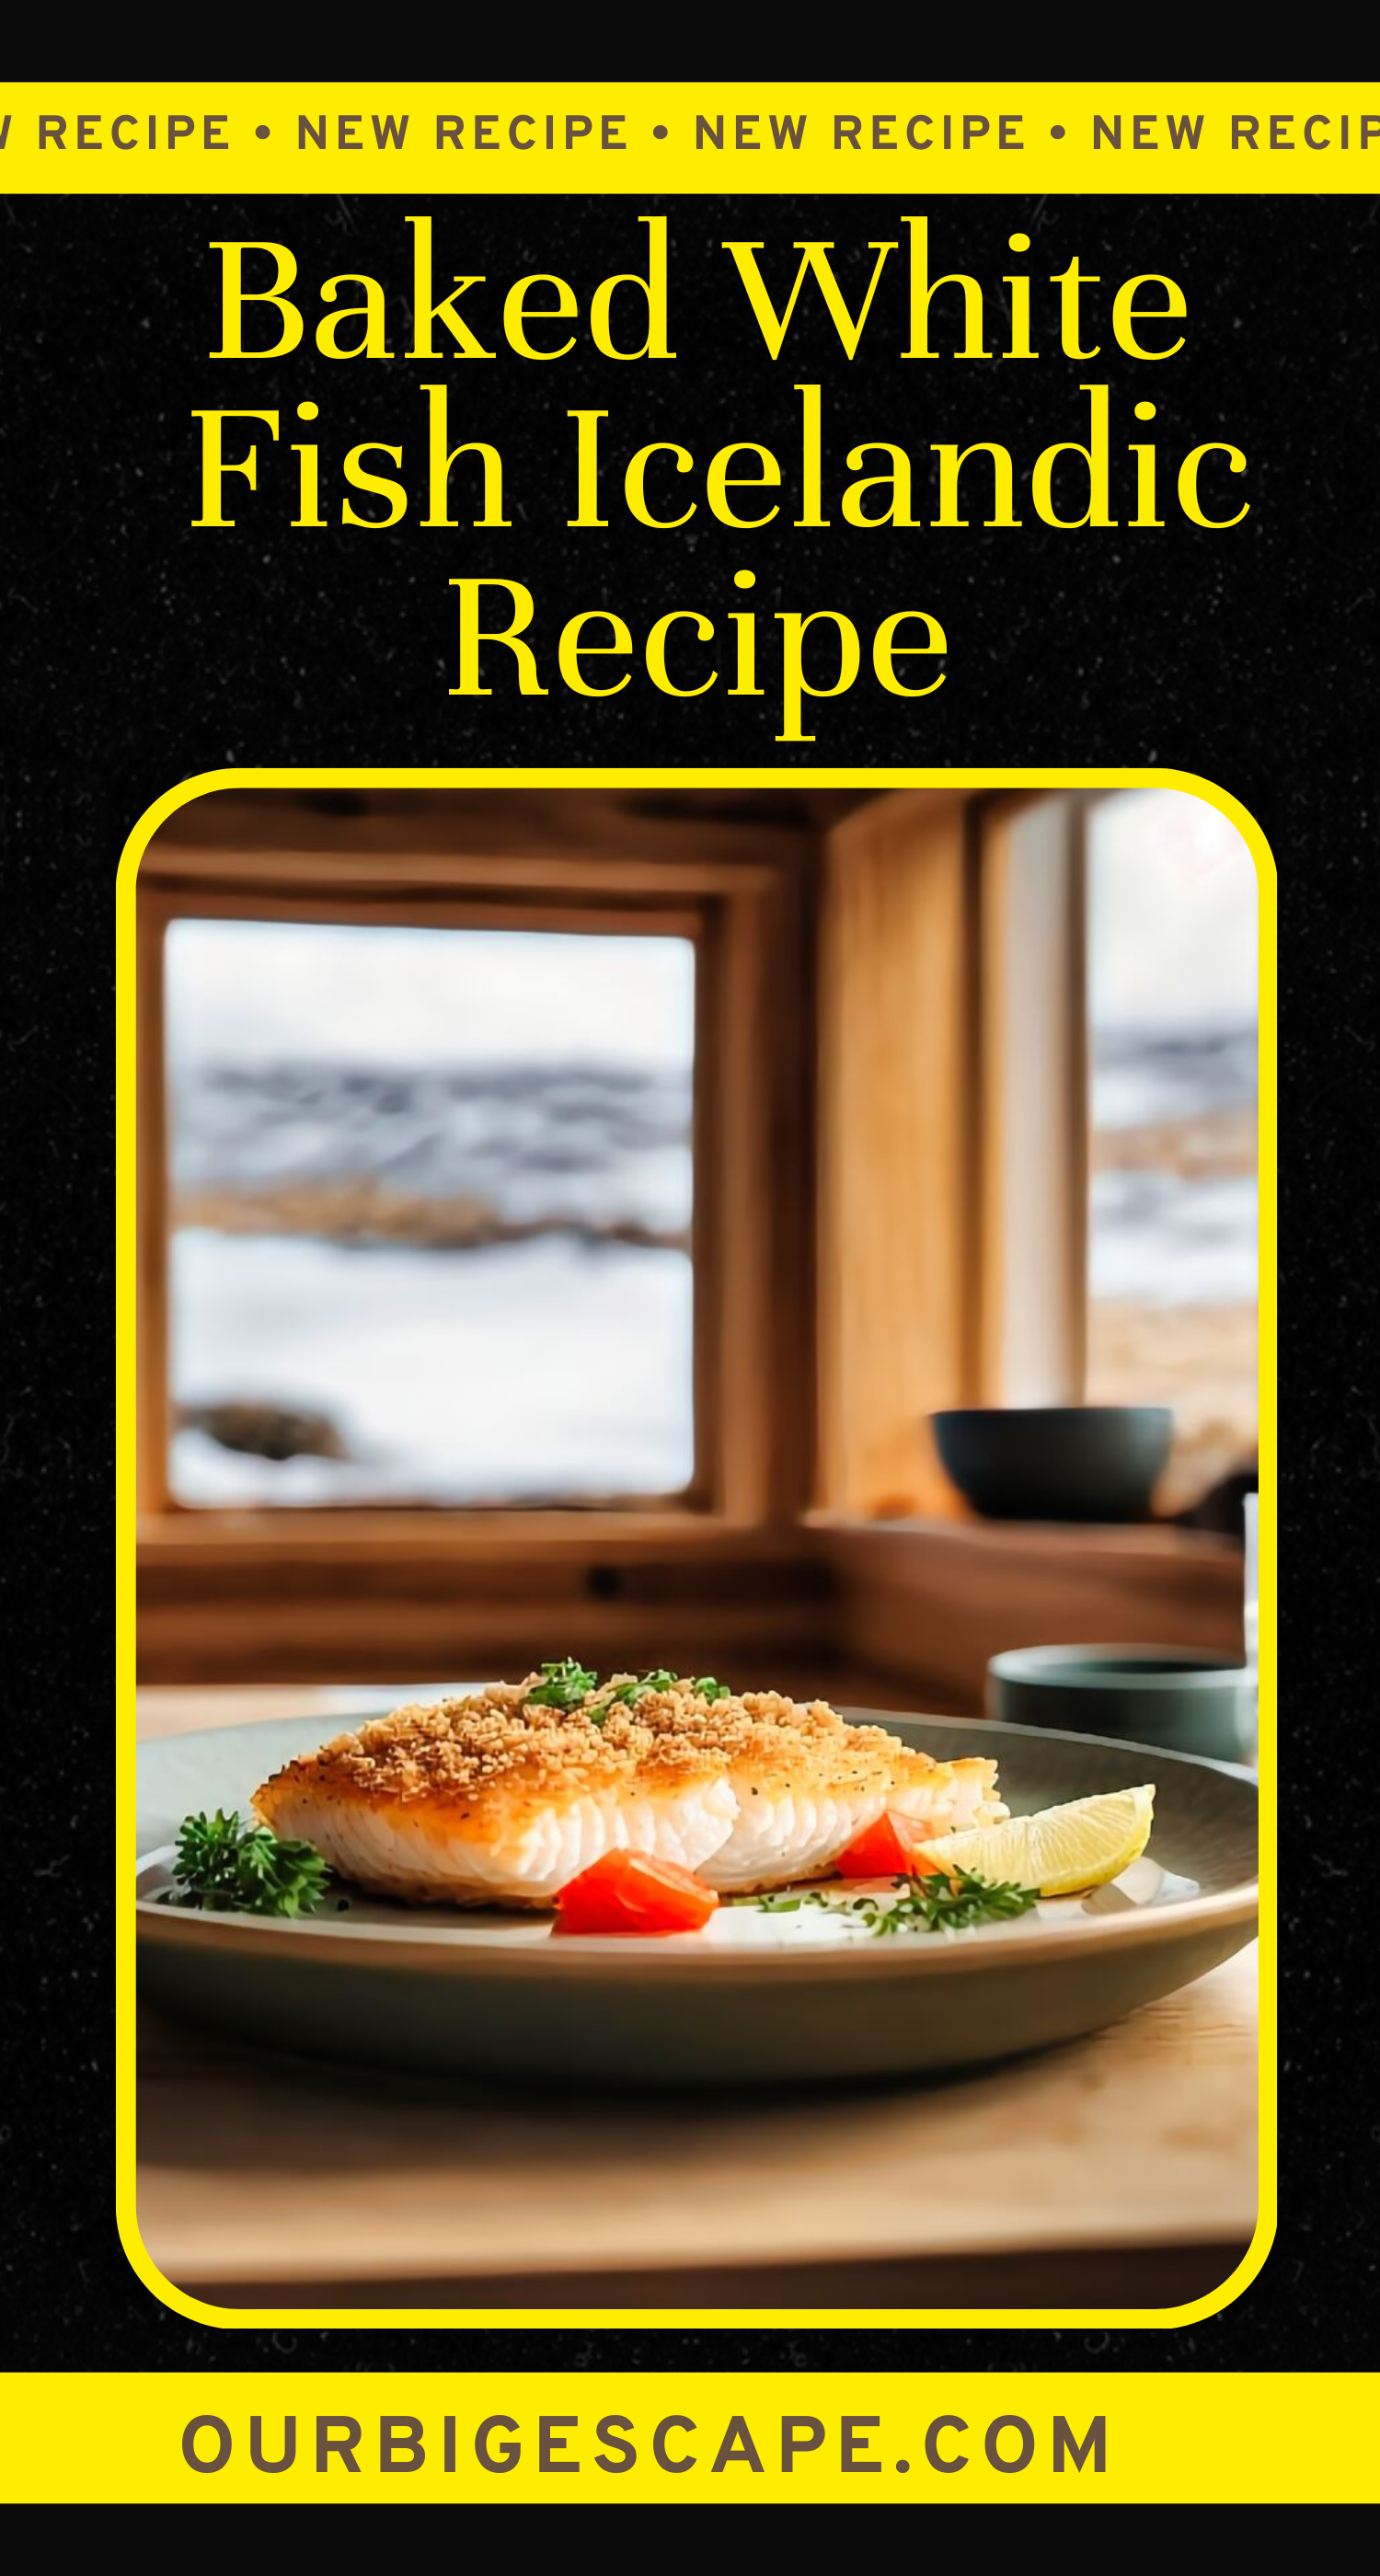 Baked White Fish Icelandic Recipe